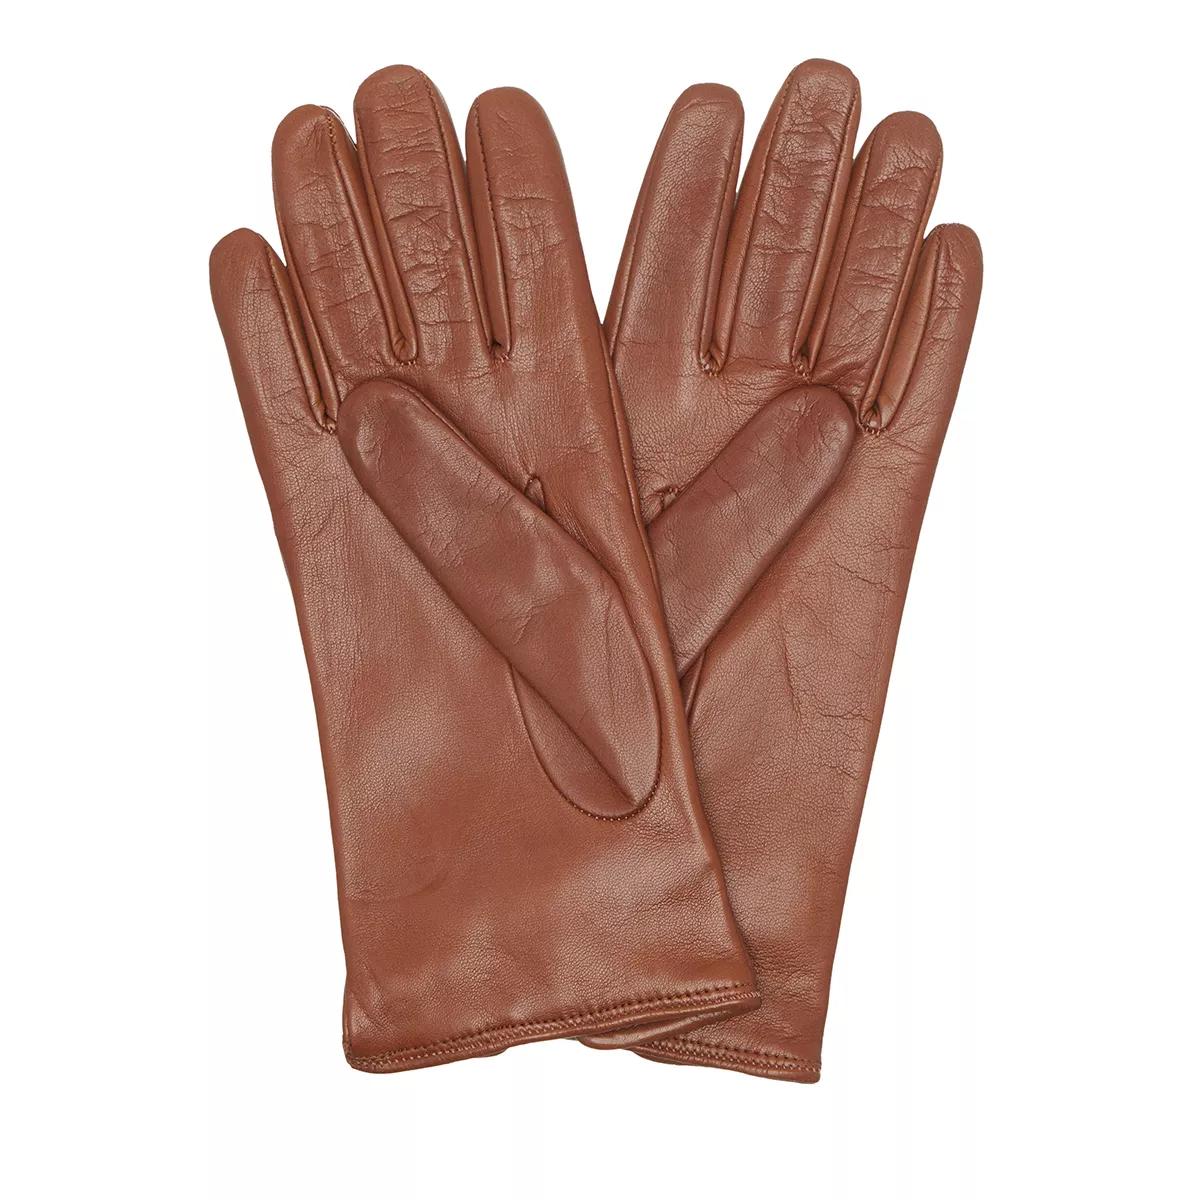 Moschino Handschuhe - Glove M1892 - Gr. 8 - in Braun - für Damen von Moschino